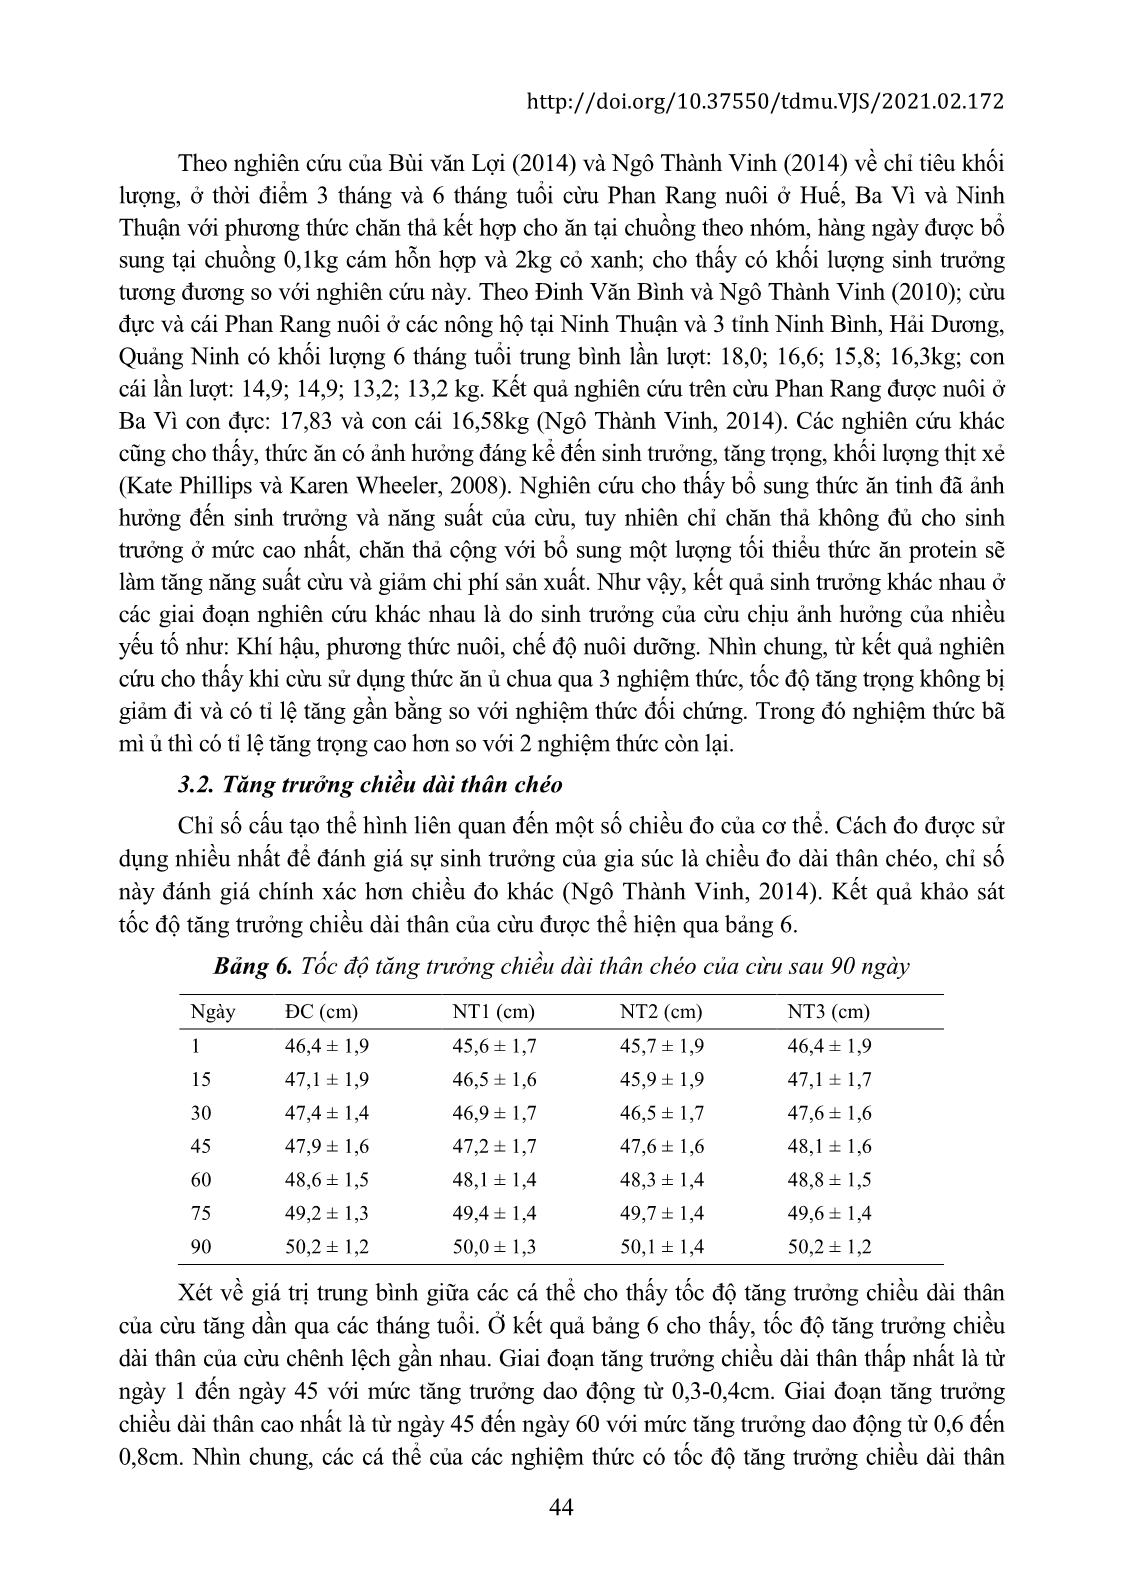 Khảo sát các chỉ tiêu sinh trưởng của cừu Phan Rang khi sử dụng thức ăn ủ chua trang 5